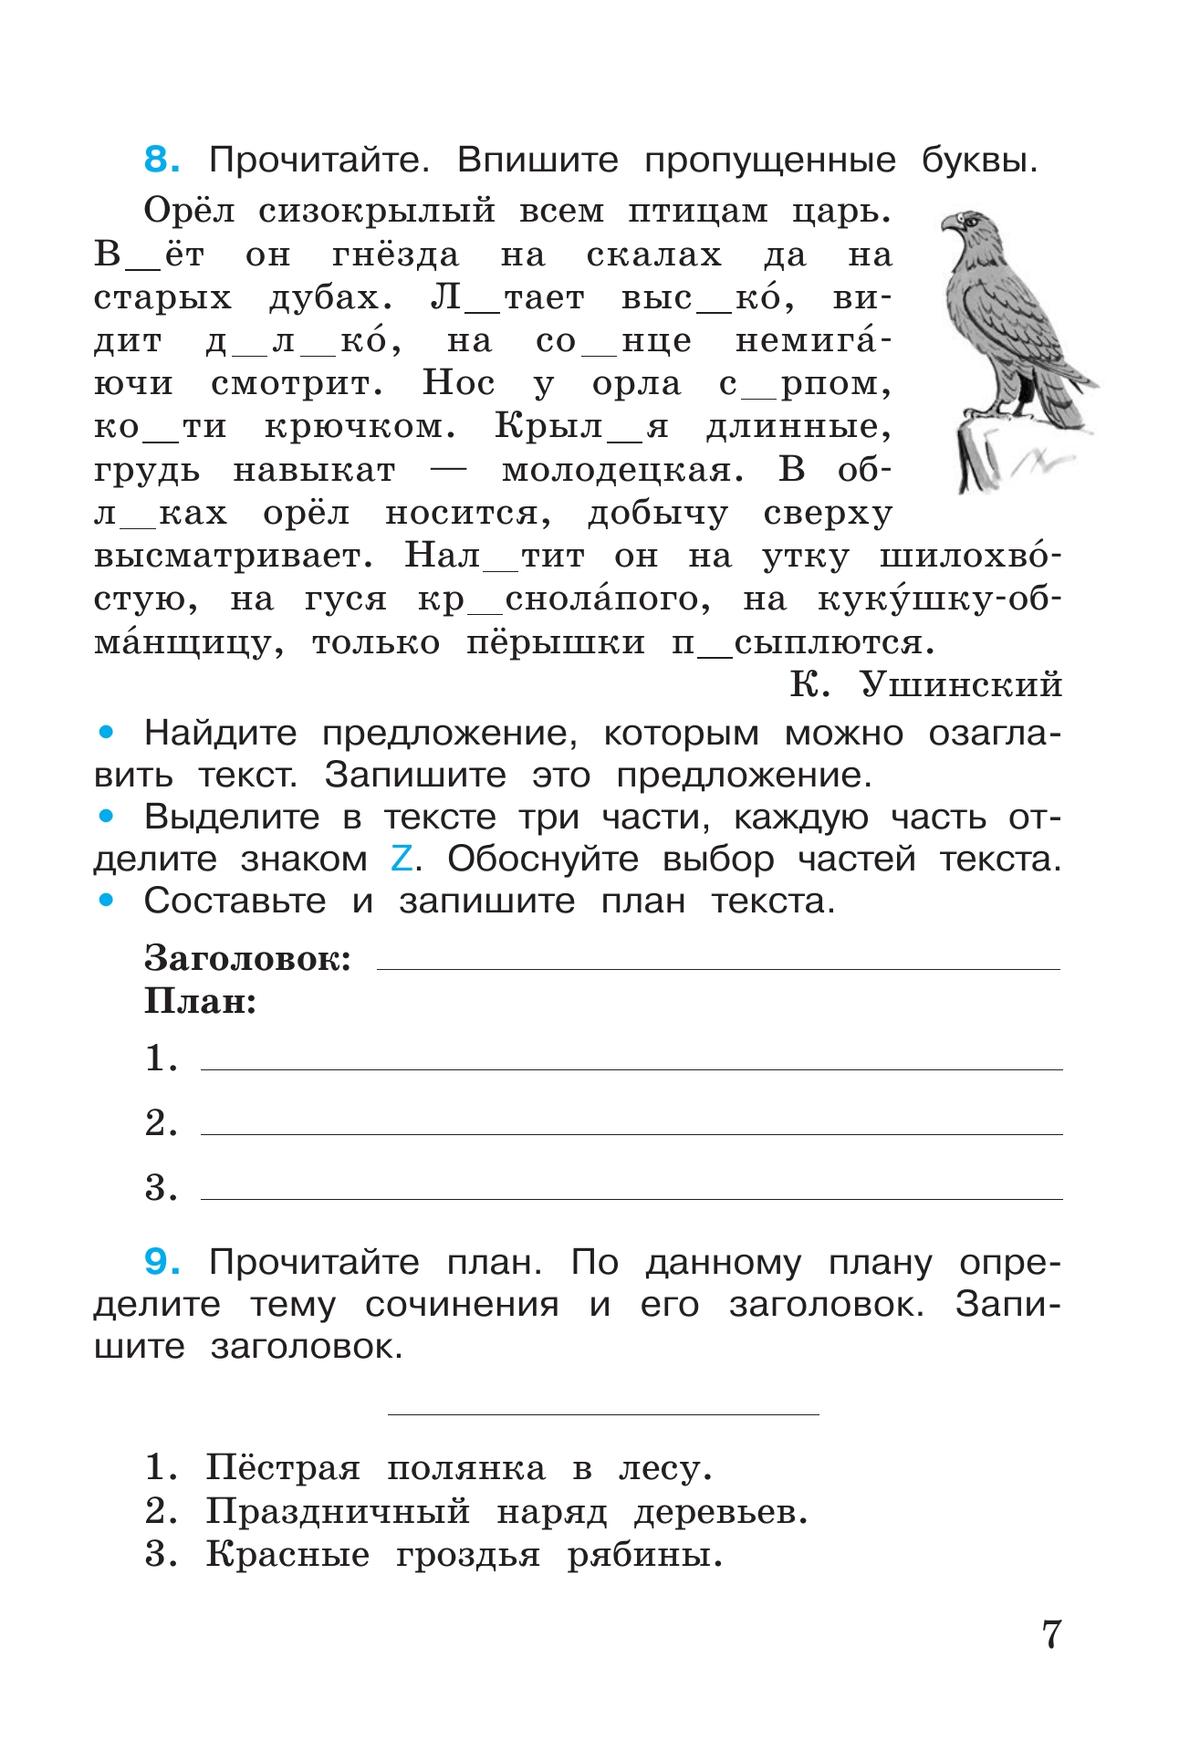 Русский язык. Рабочая тетрадь. 4 класс. В 2-х ч. Ч. 1 8